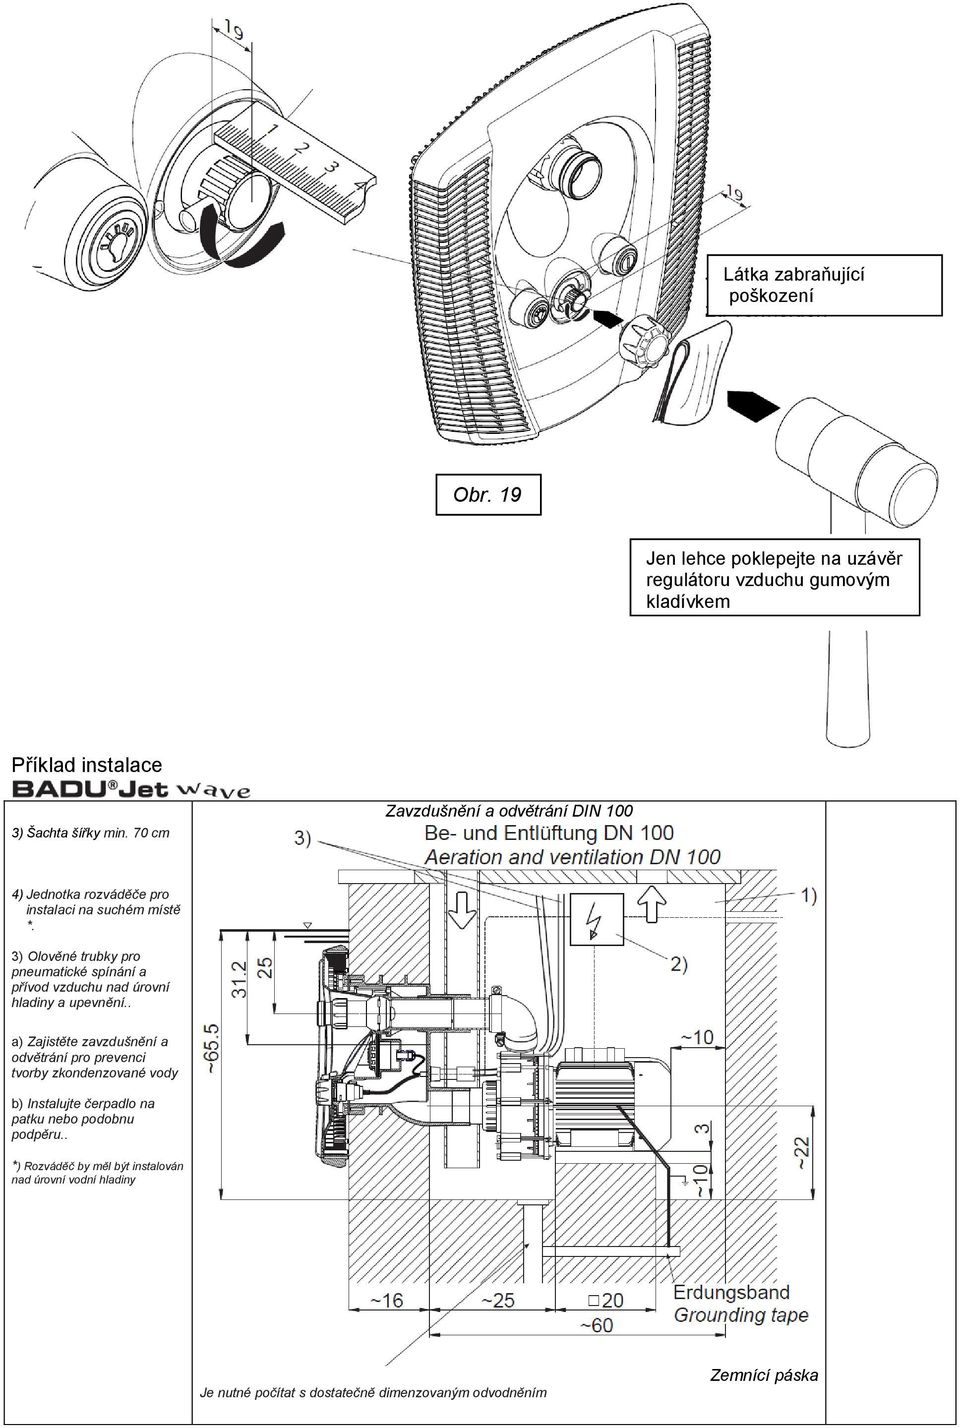 3) Olověné trubky pro pneumatické spínání a přívod vzduchu nad úrovní hladiny a upevnění.